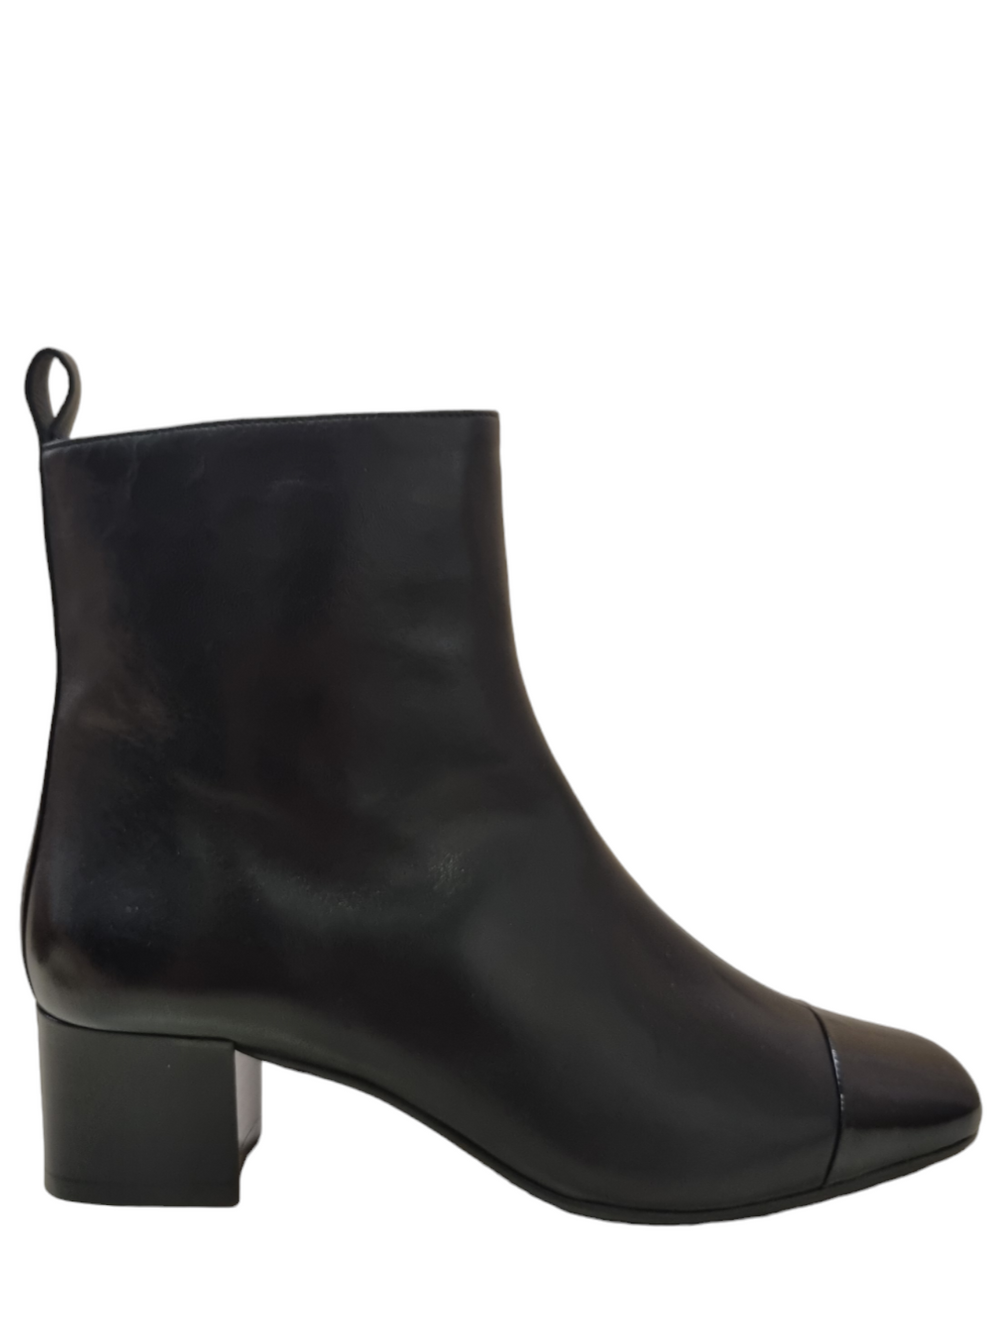 Estime Black Leather Boots - Carel Paris - Liberty Shoes Australia